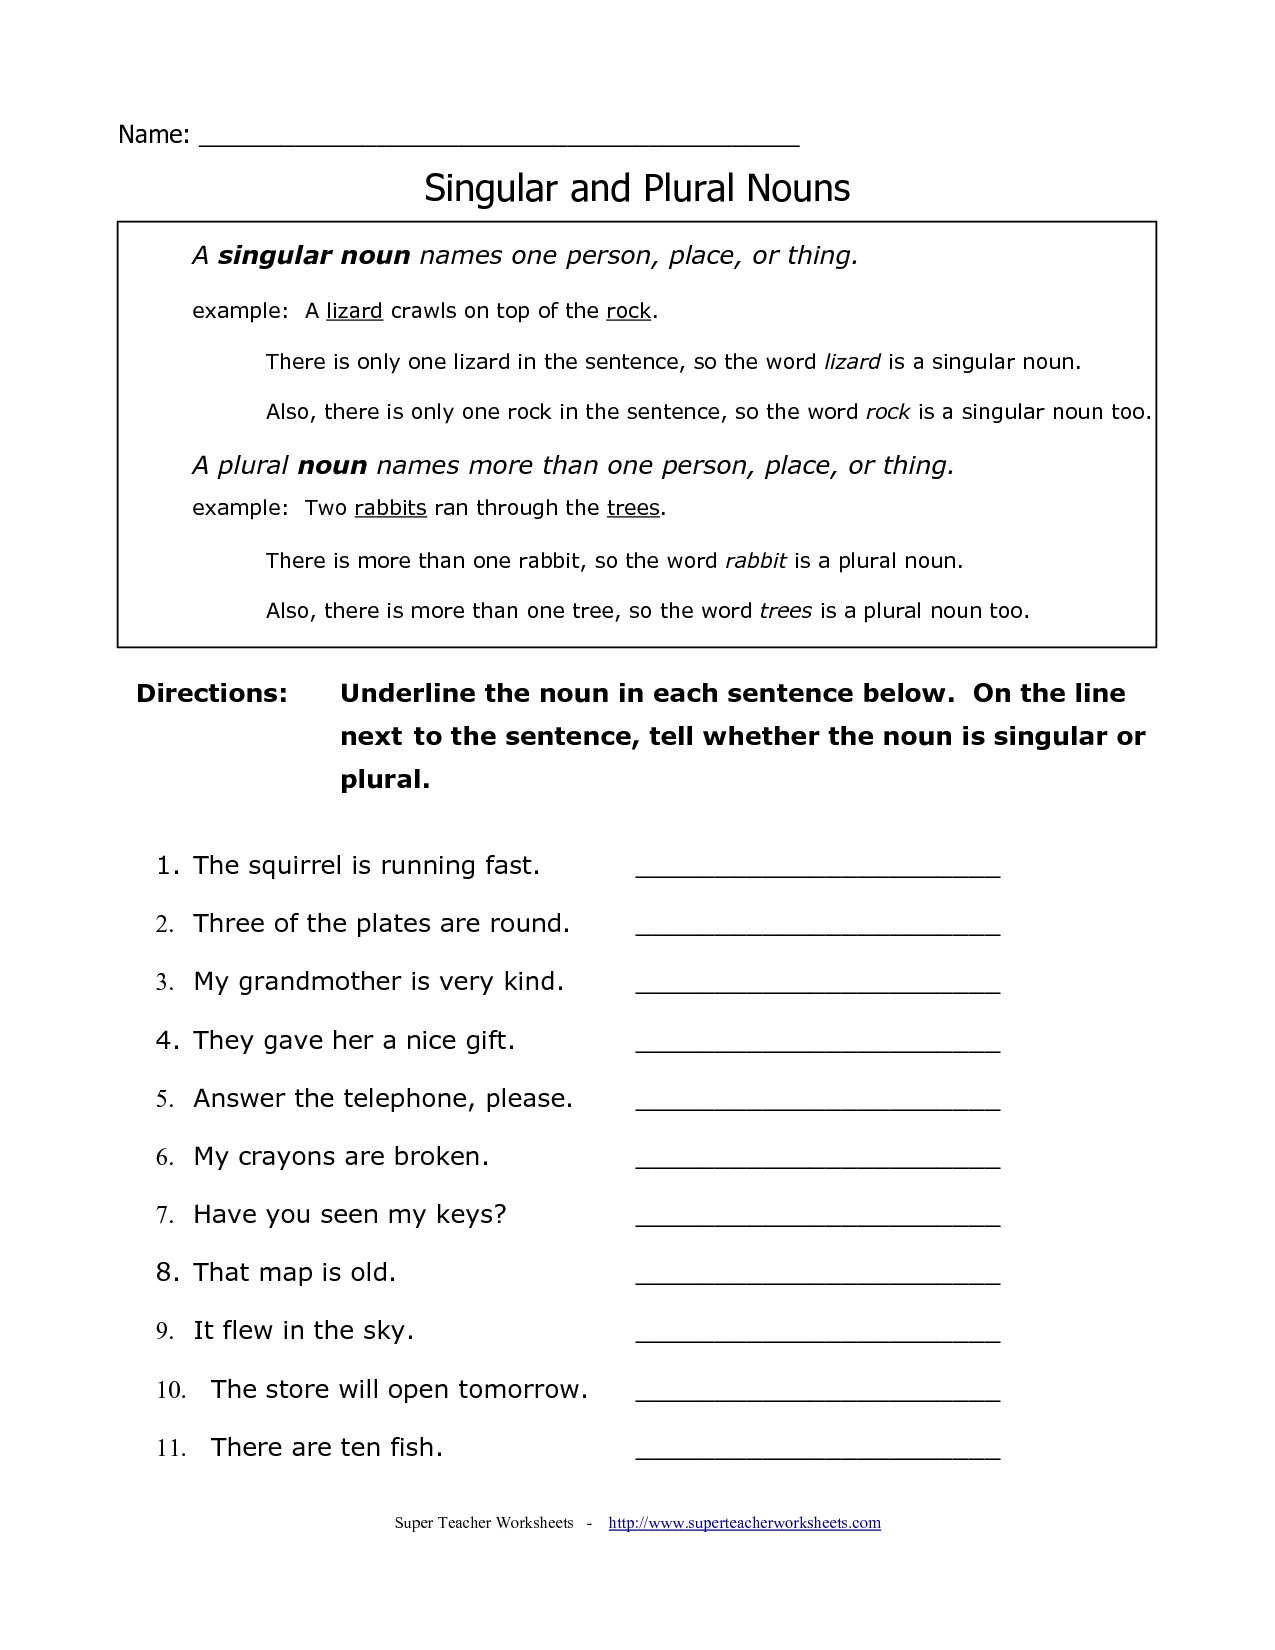 18 Best Images of Singular Plural Worksheets Grade 3